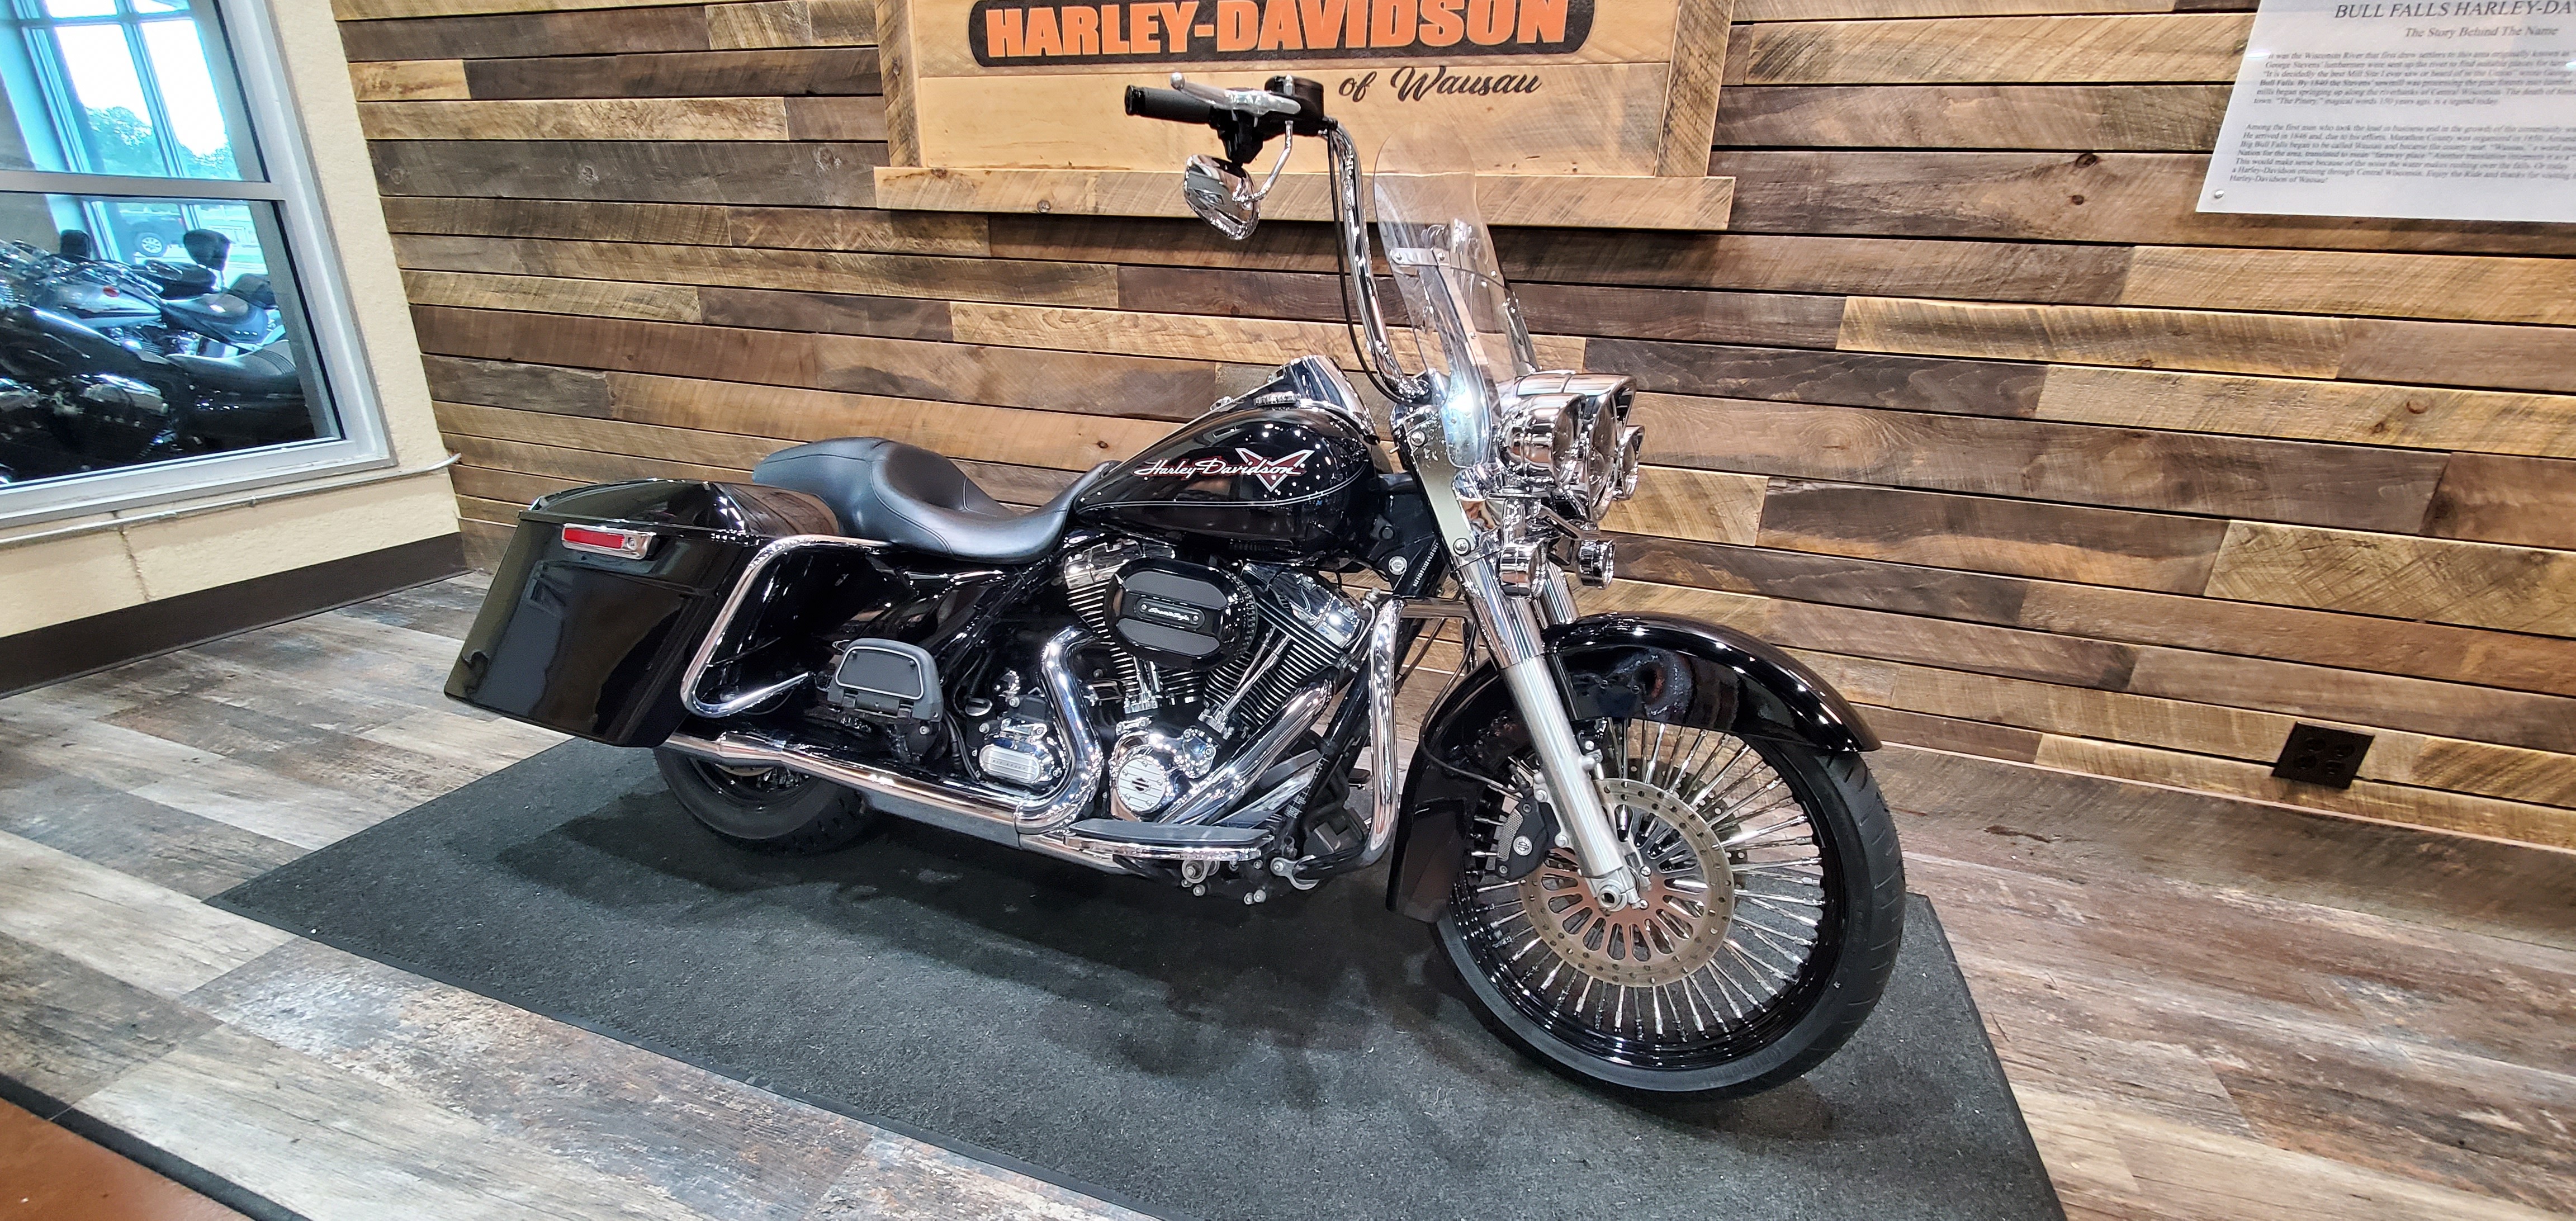 2012 Harley-Davidson Road King Base at Bull Falls Harley-Davidson